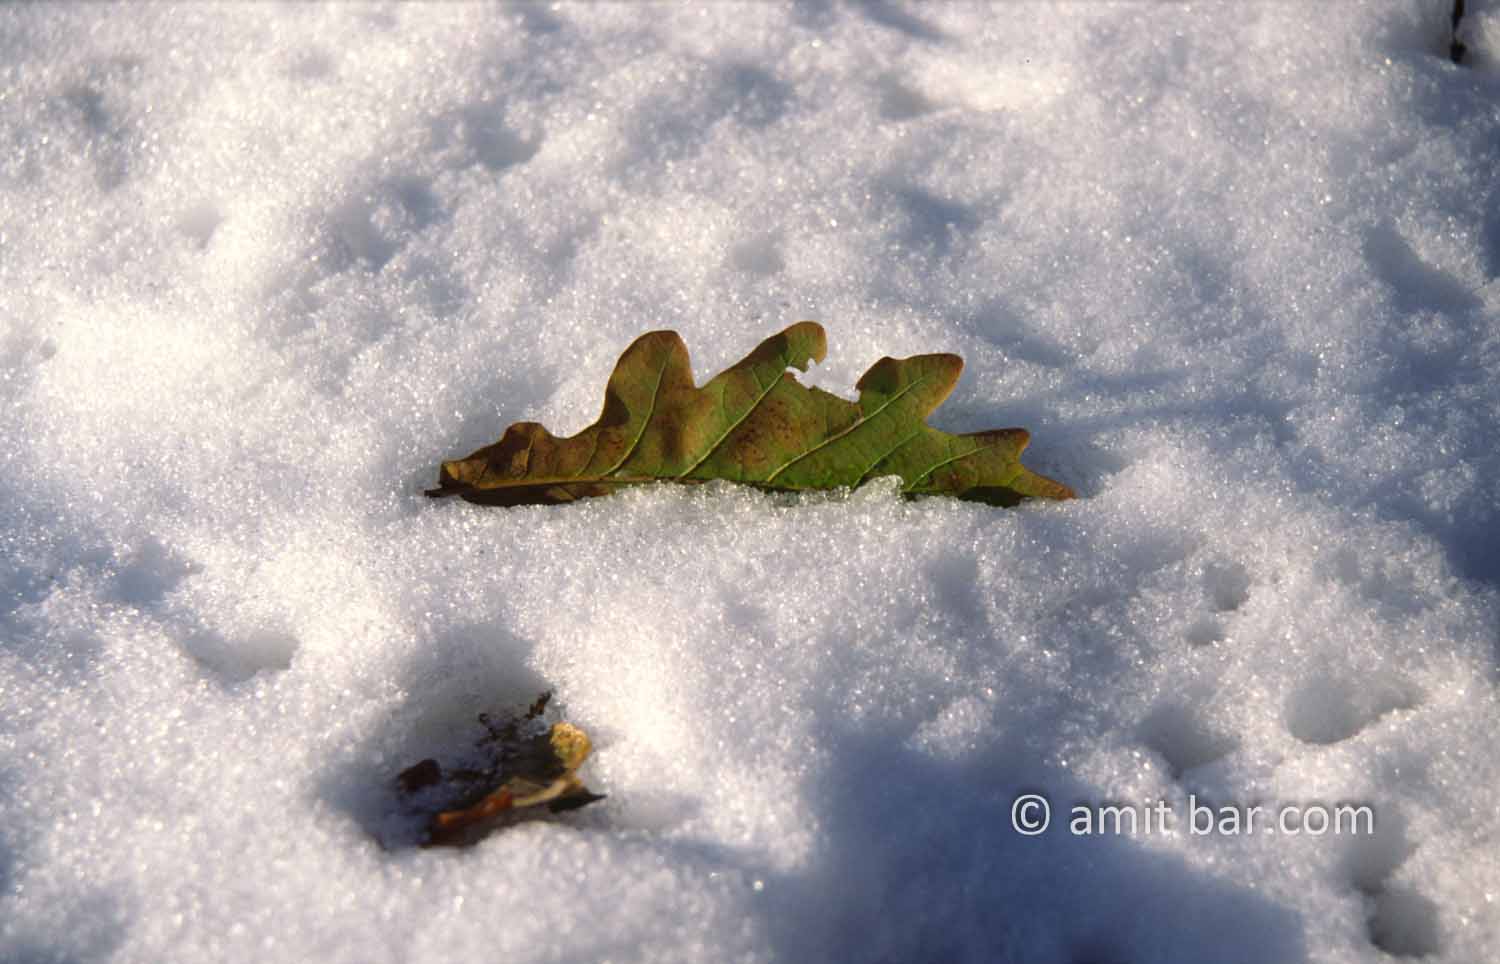 Oak leaf: Oak leaf covered with fresh snow